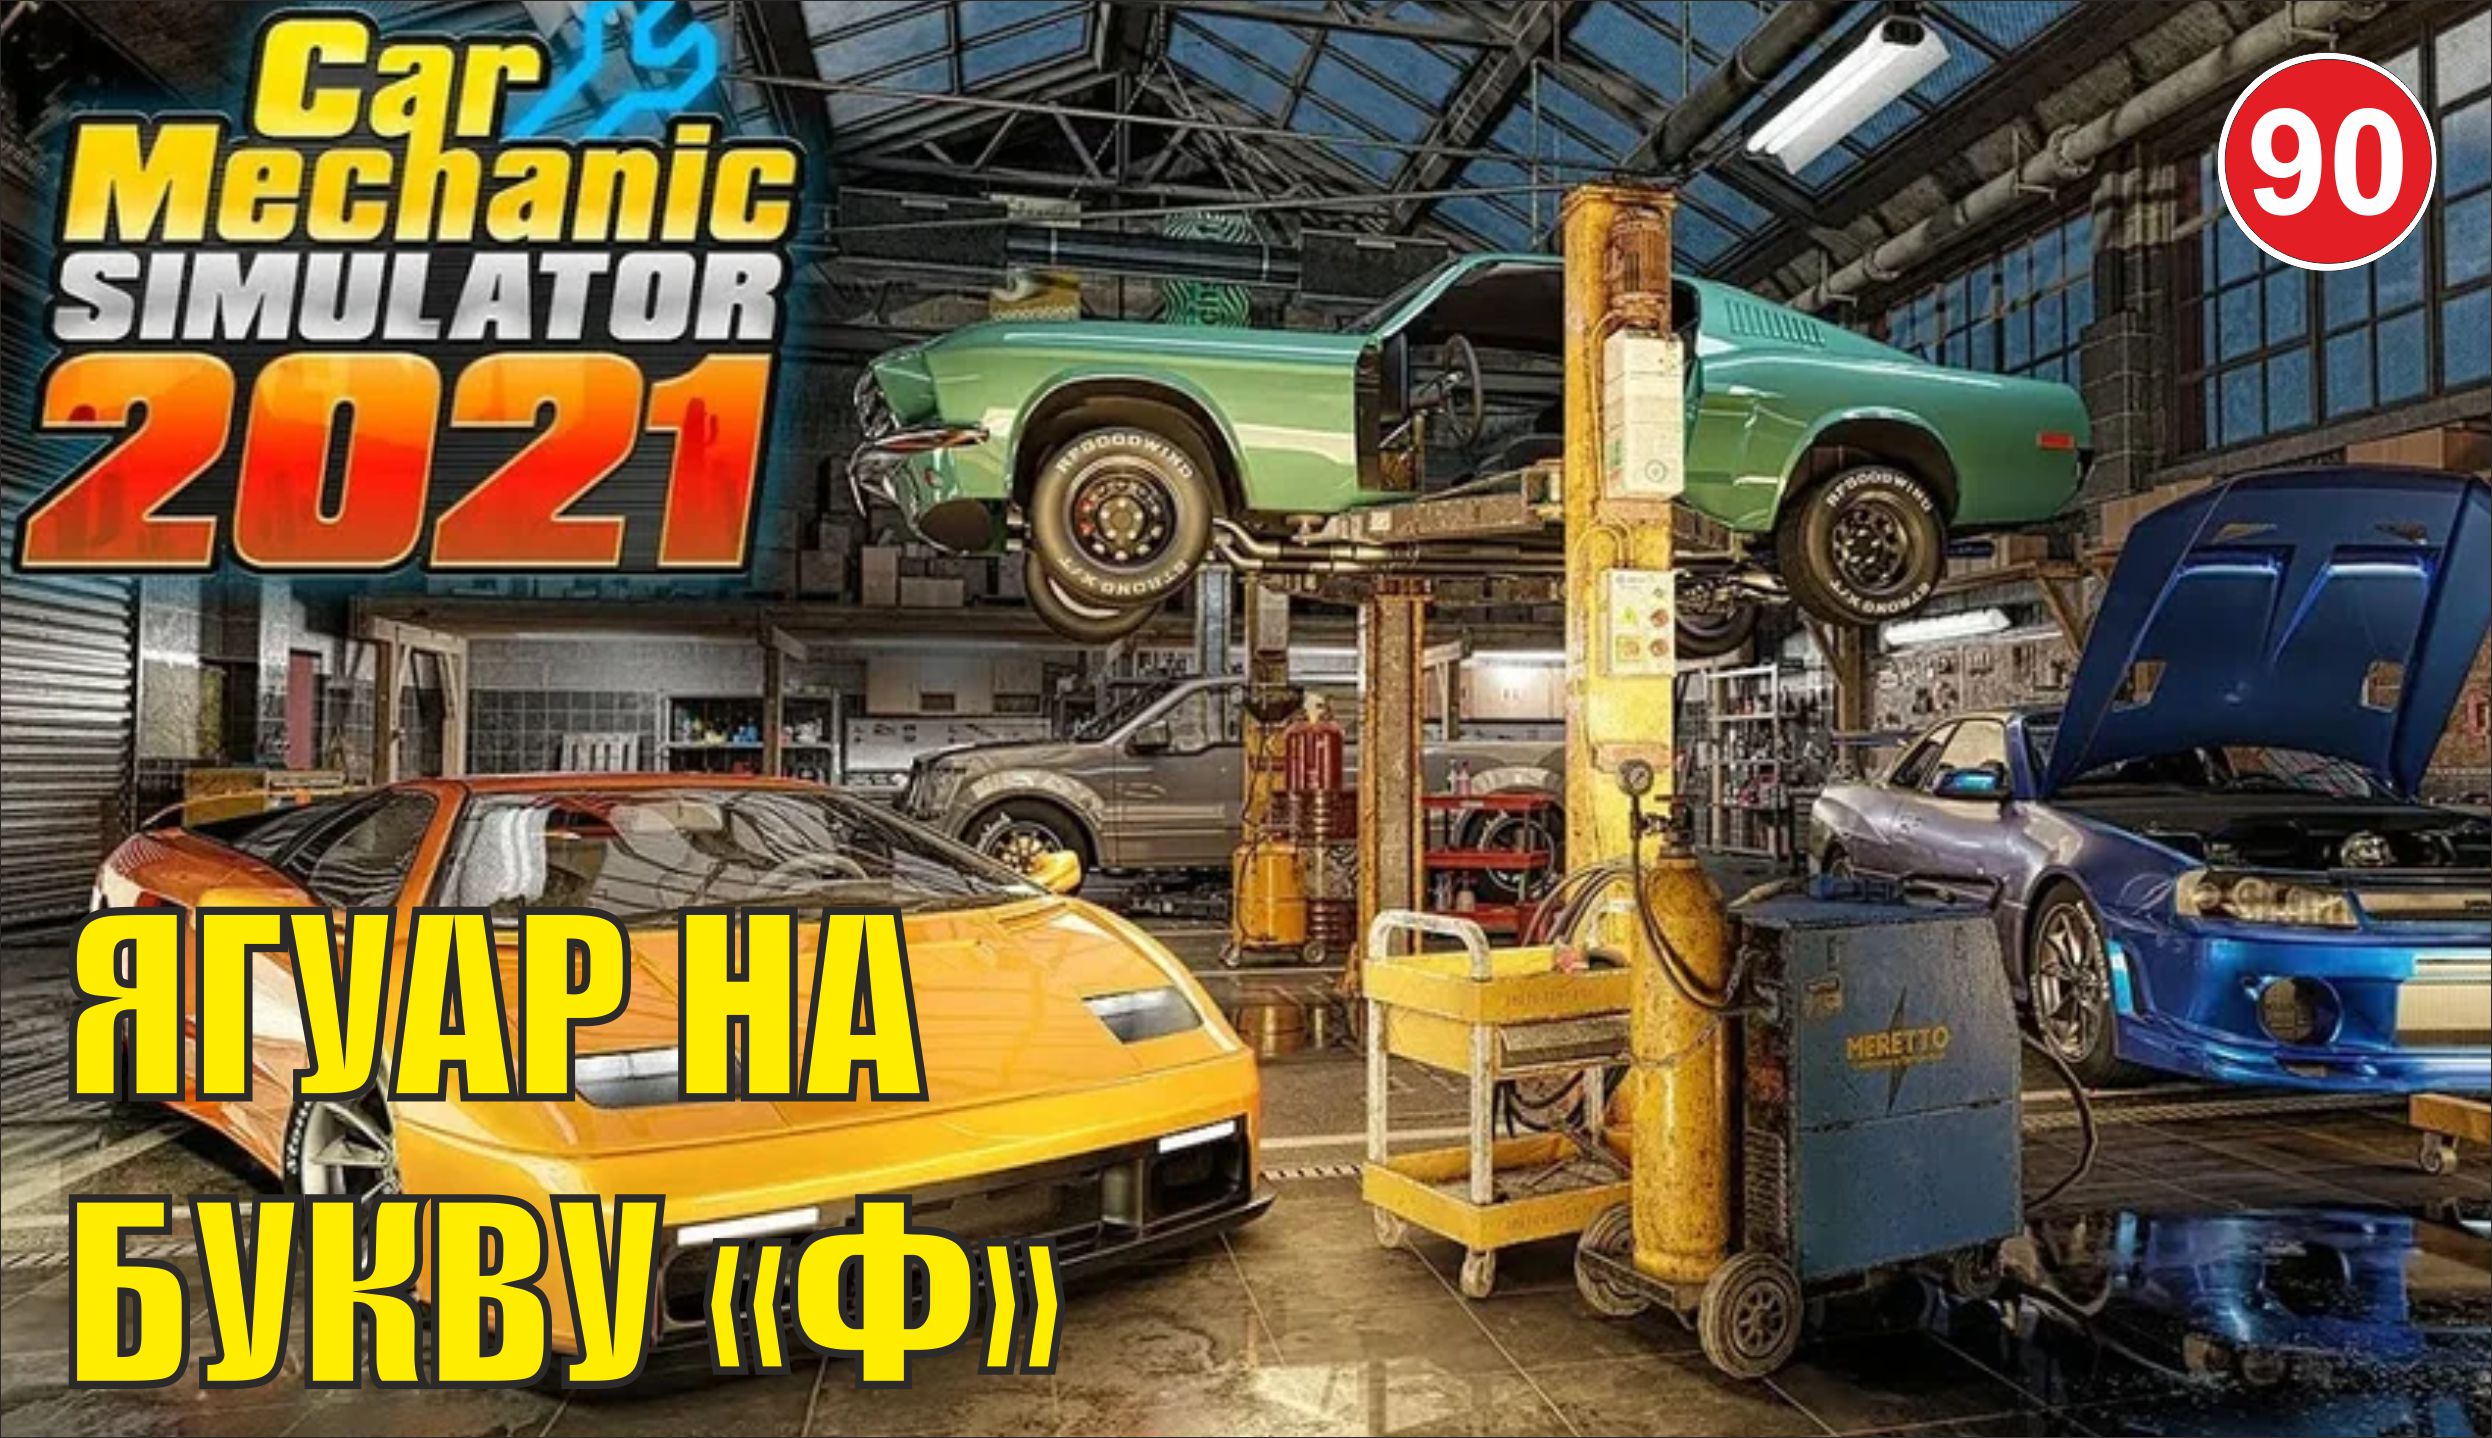 Car Mechanic Simulator 2021 - Ягуар на букву "Ф"